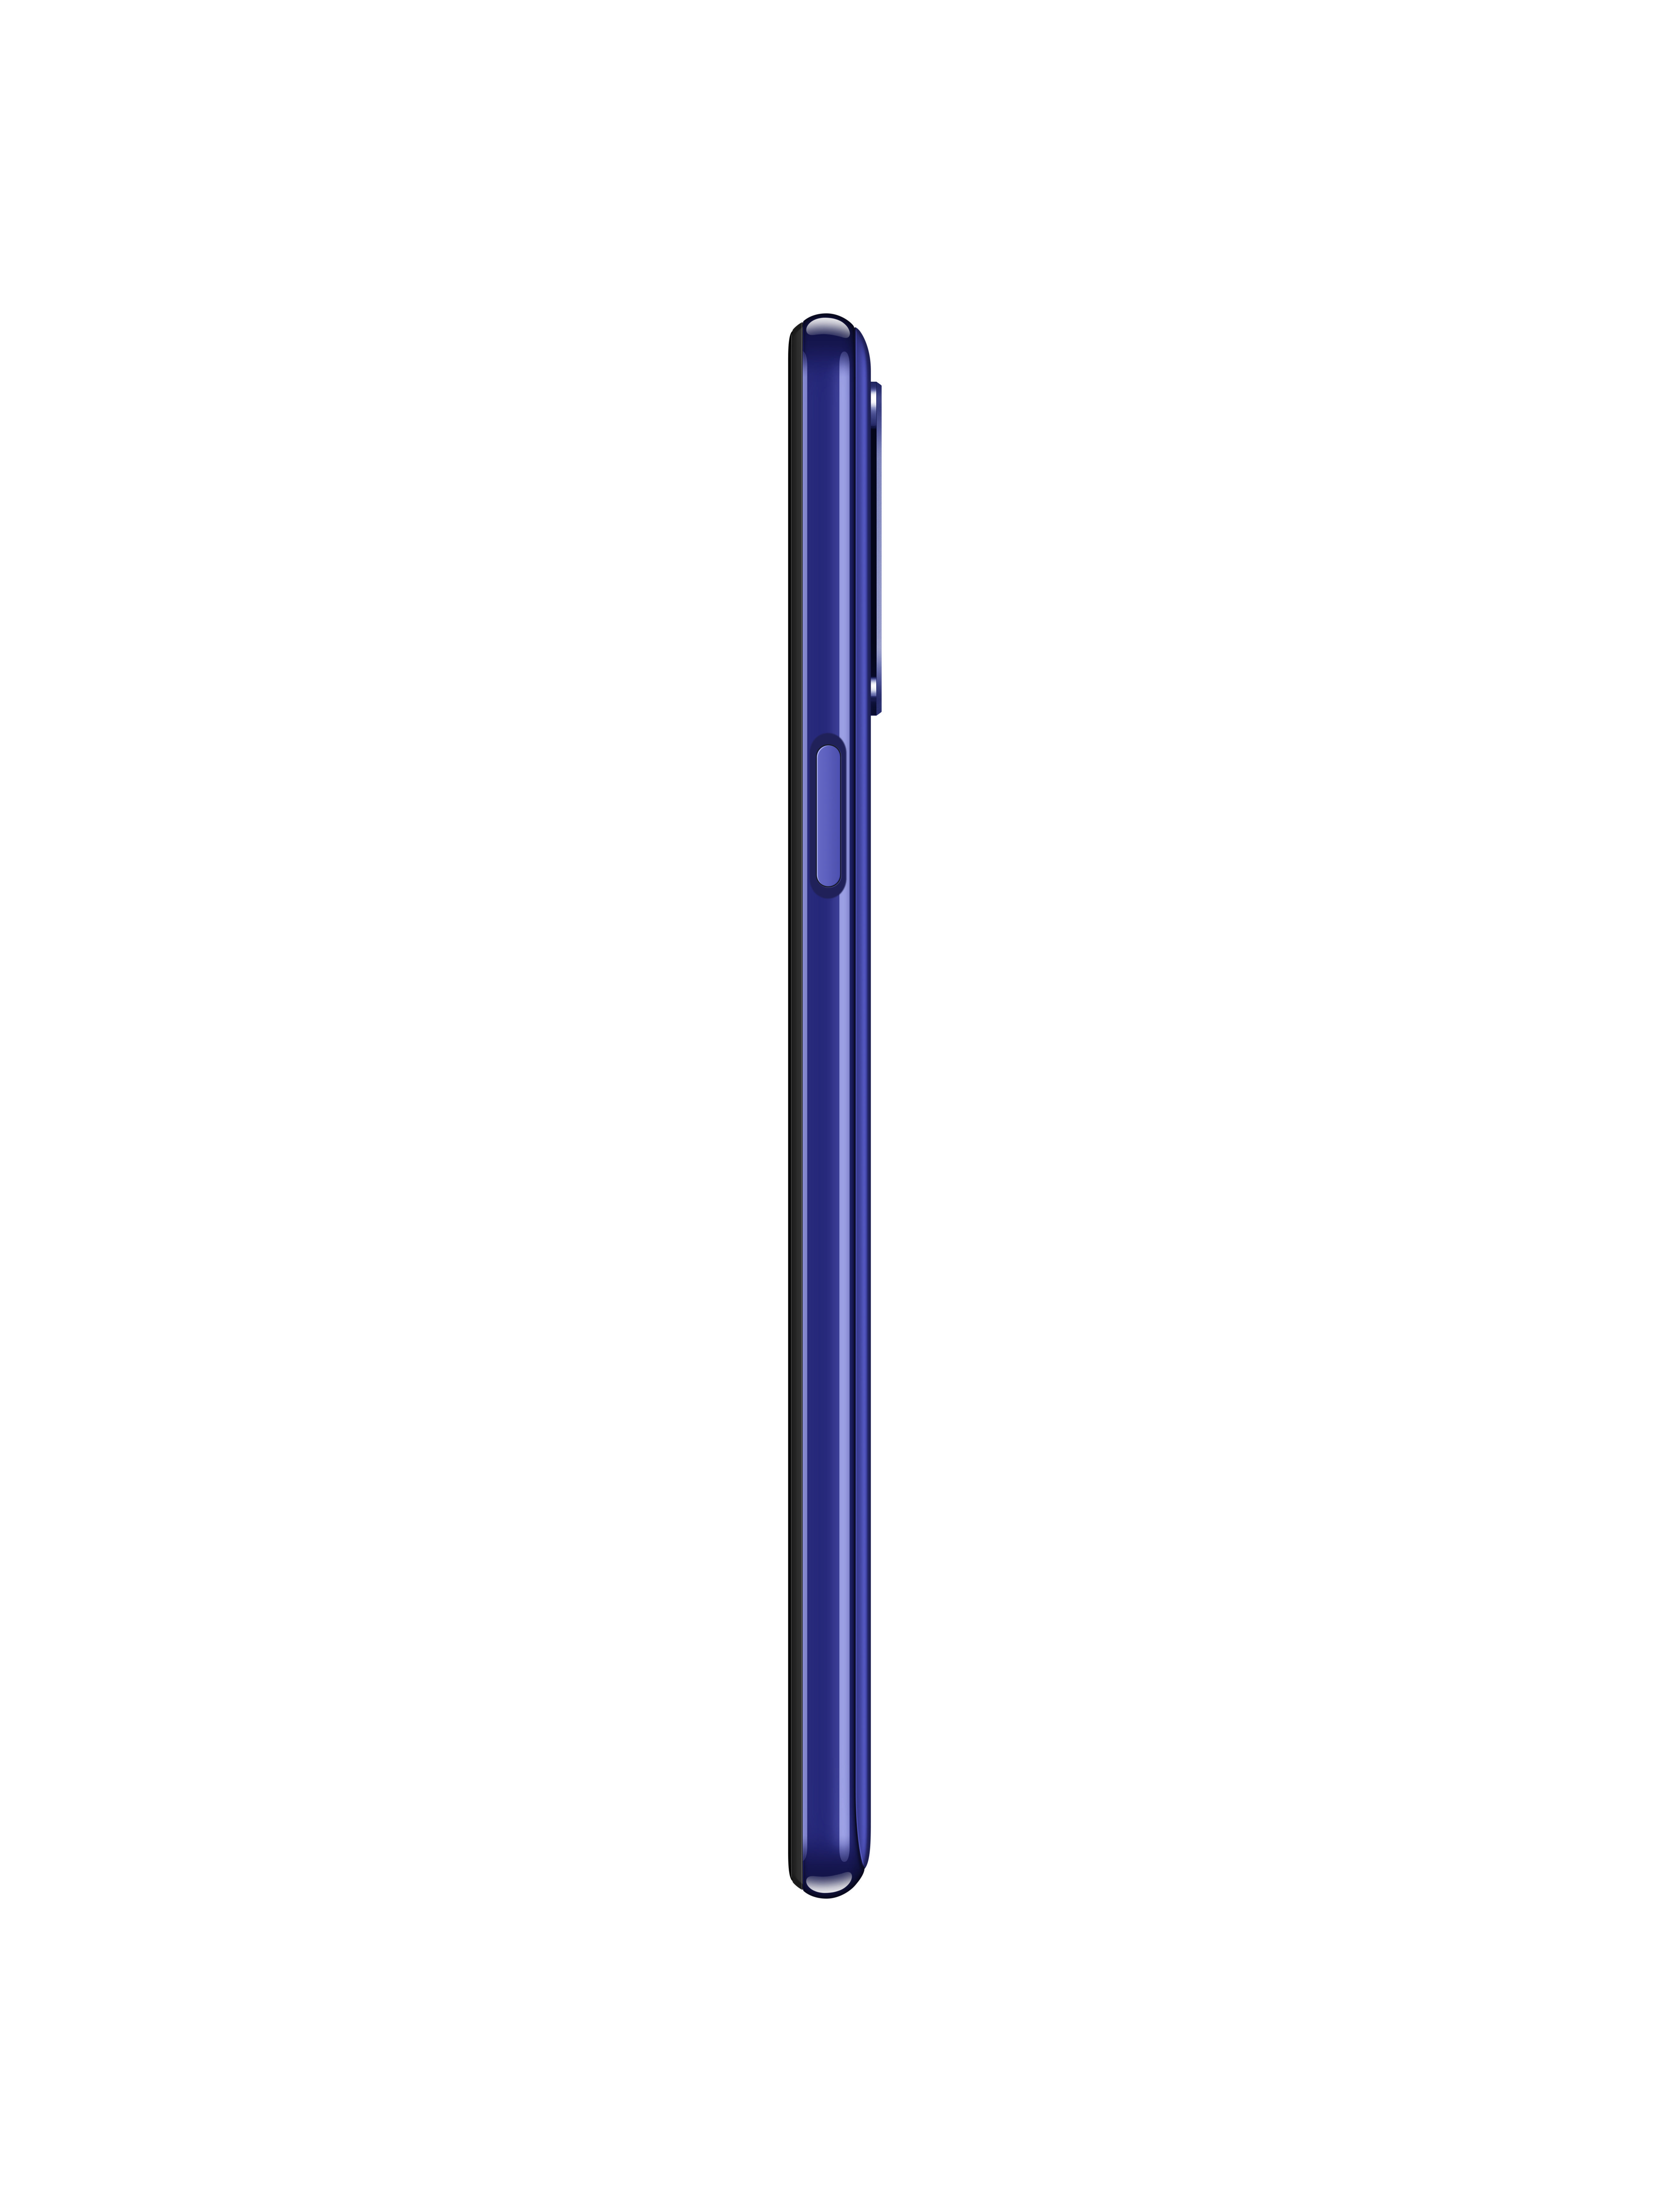 Blau Dual GB LG SIM 64 K52